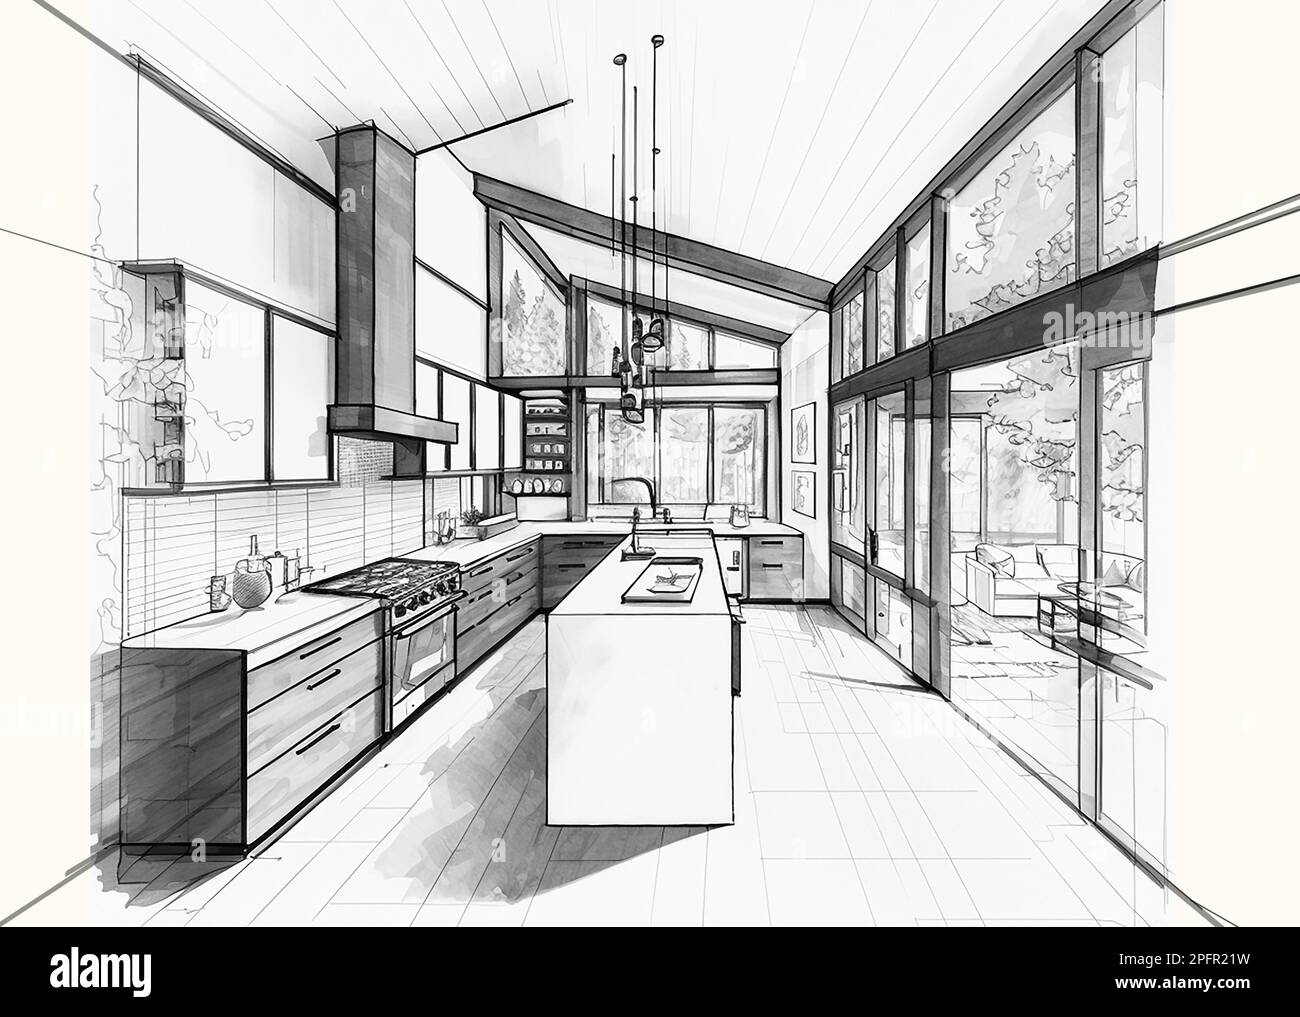 Esquisse architecturale d'une cuisine moderne moderne, dessin noir et blanc Banque D'Images